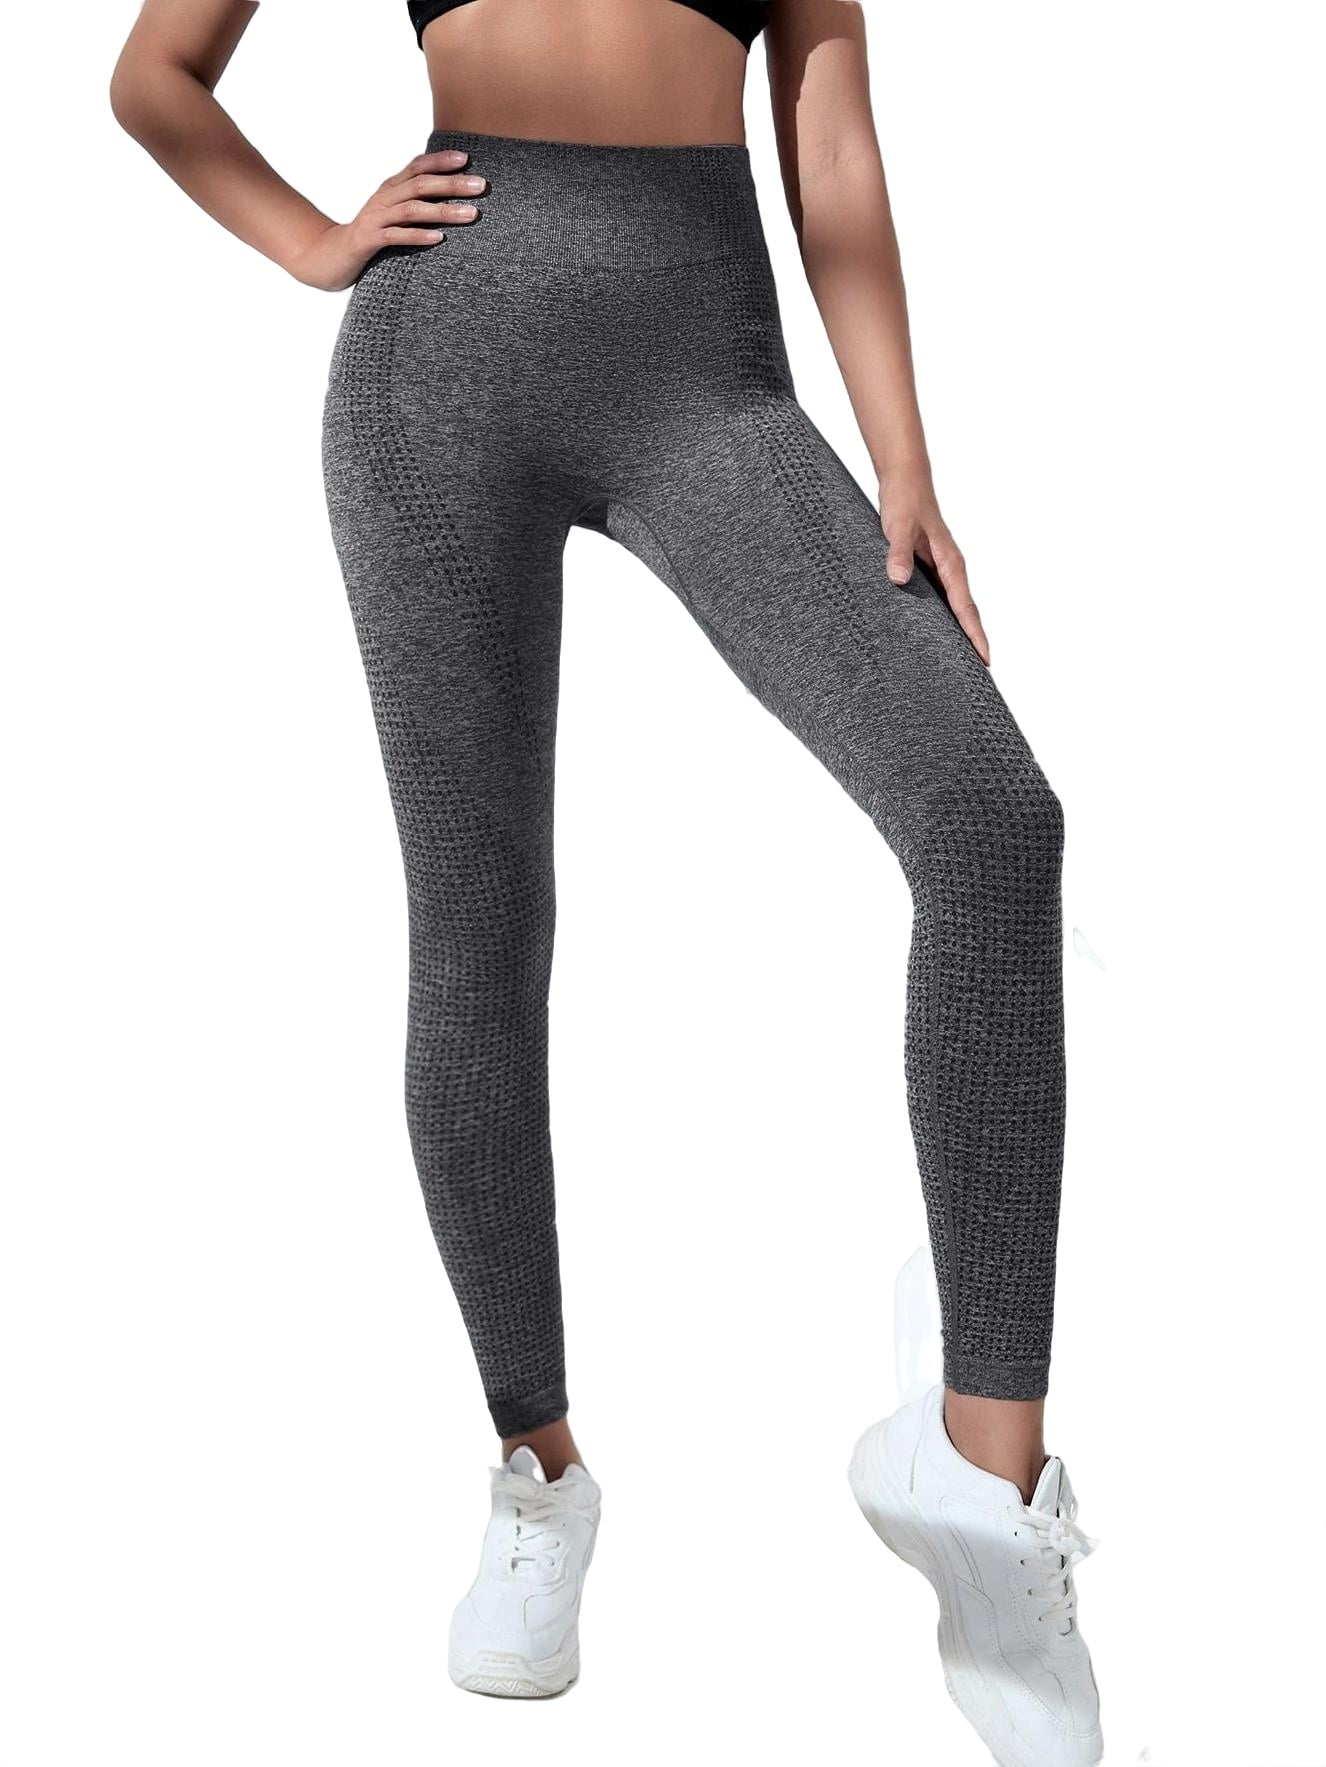 Hourglass seamless leggings gray sport leggings – Olys